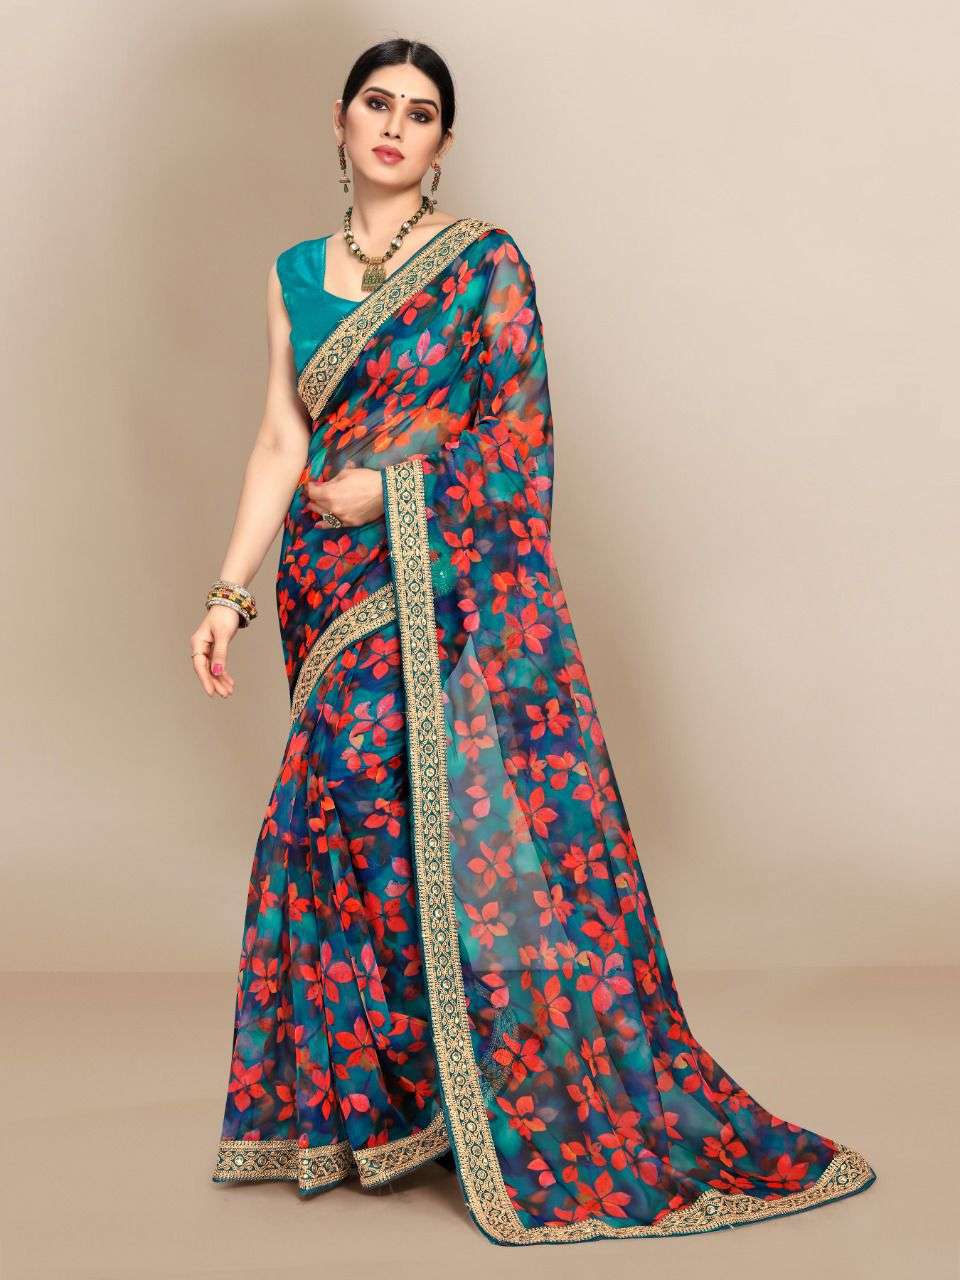 Slyvie vol 5 organza silk with printed party wear saree collection